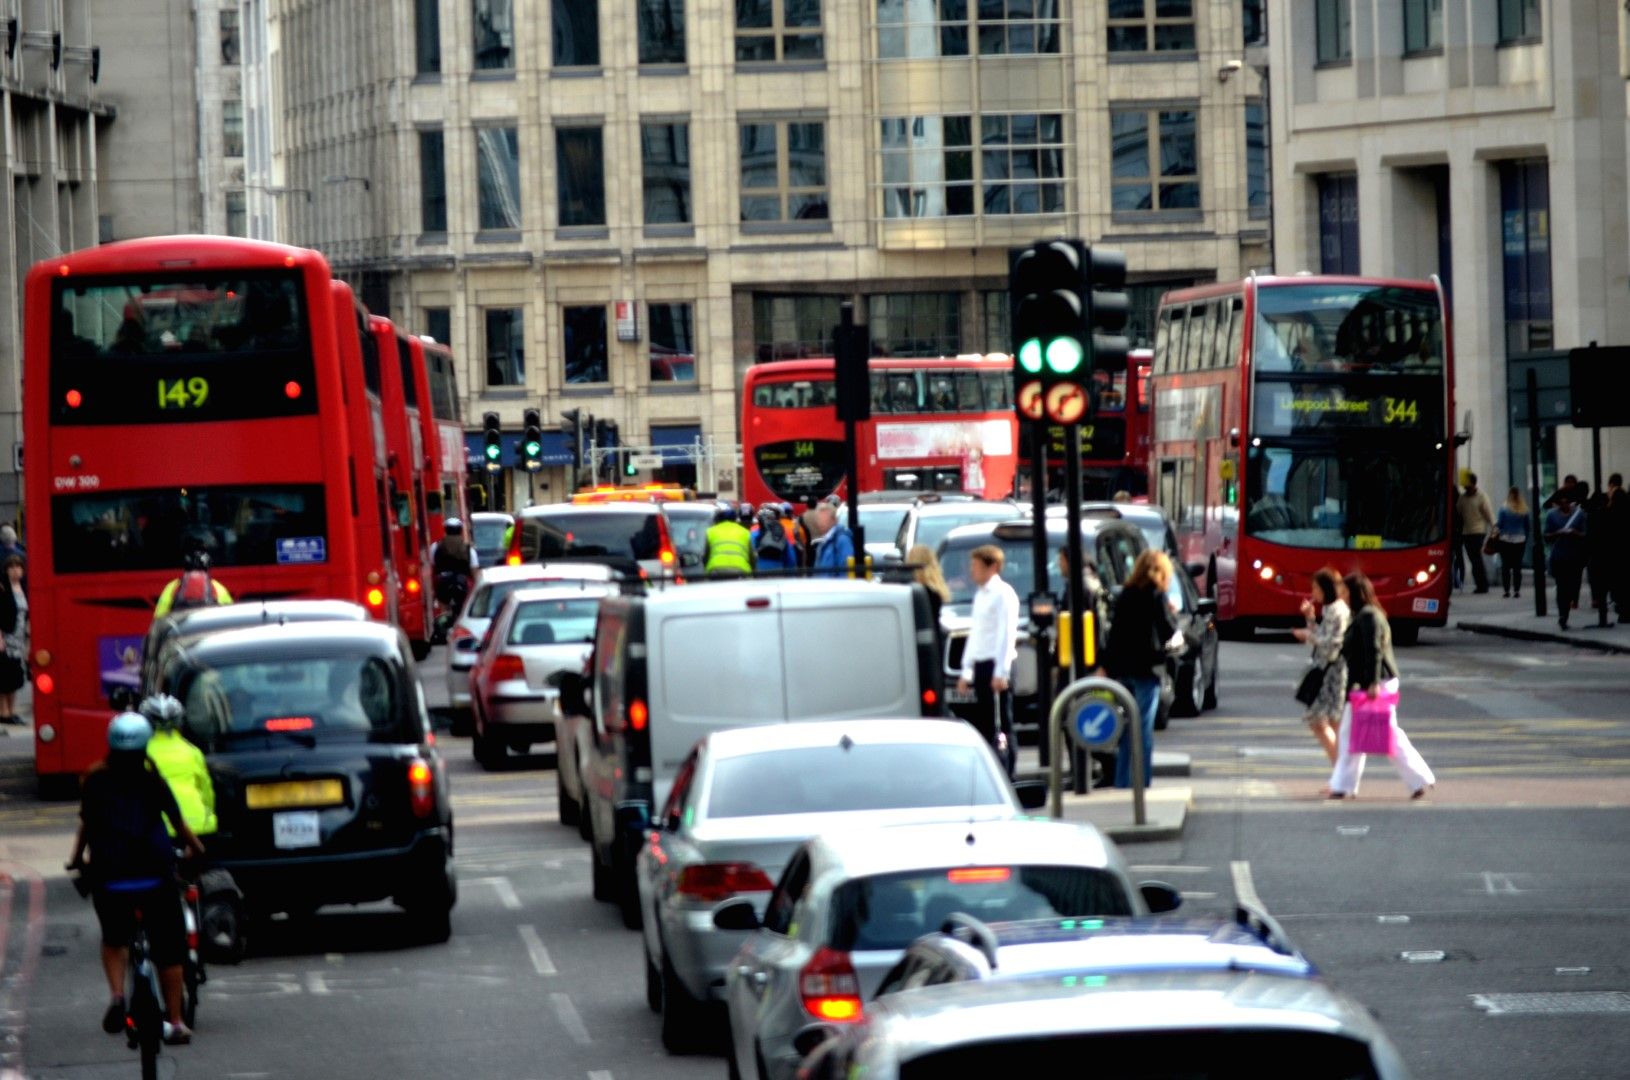 Позната картина от Лондон - засилен трафик. Борис Джонсън иска да ограничи замърсяването на въздуха, катто спре бензиновите и дизеловите коли